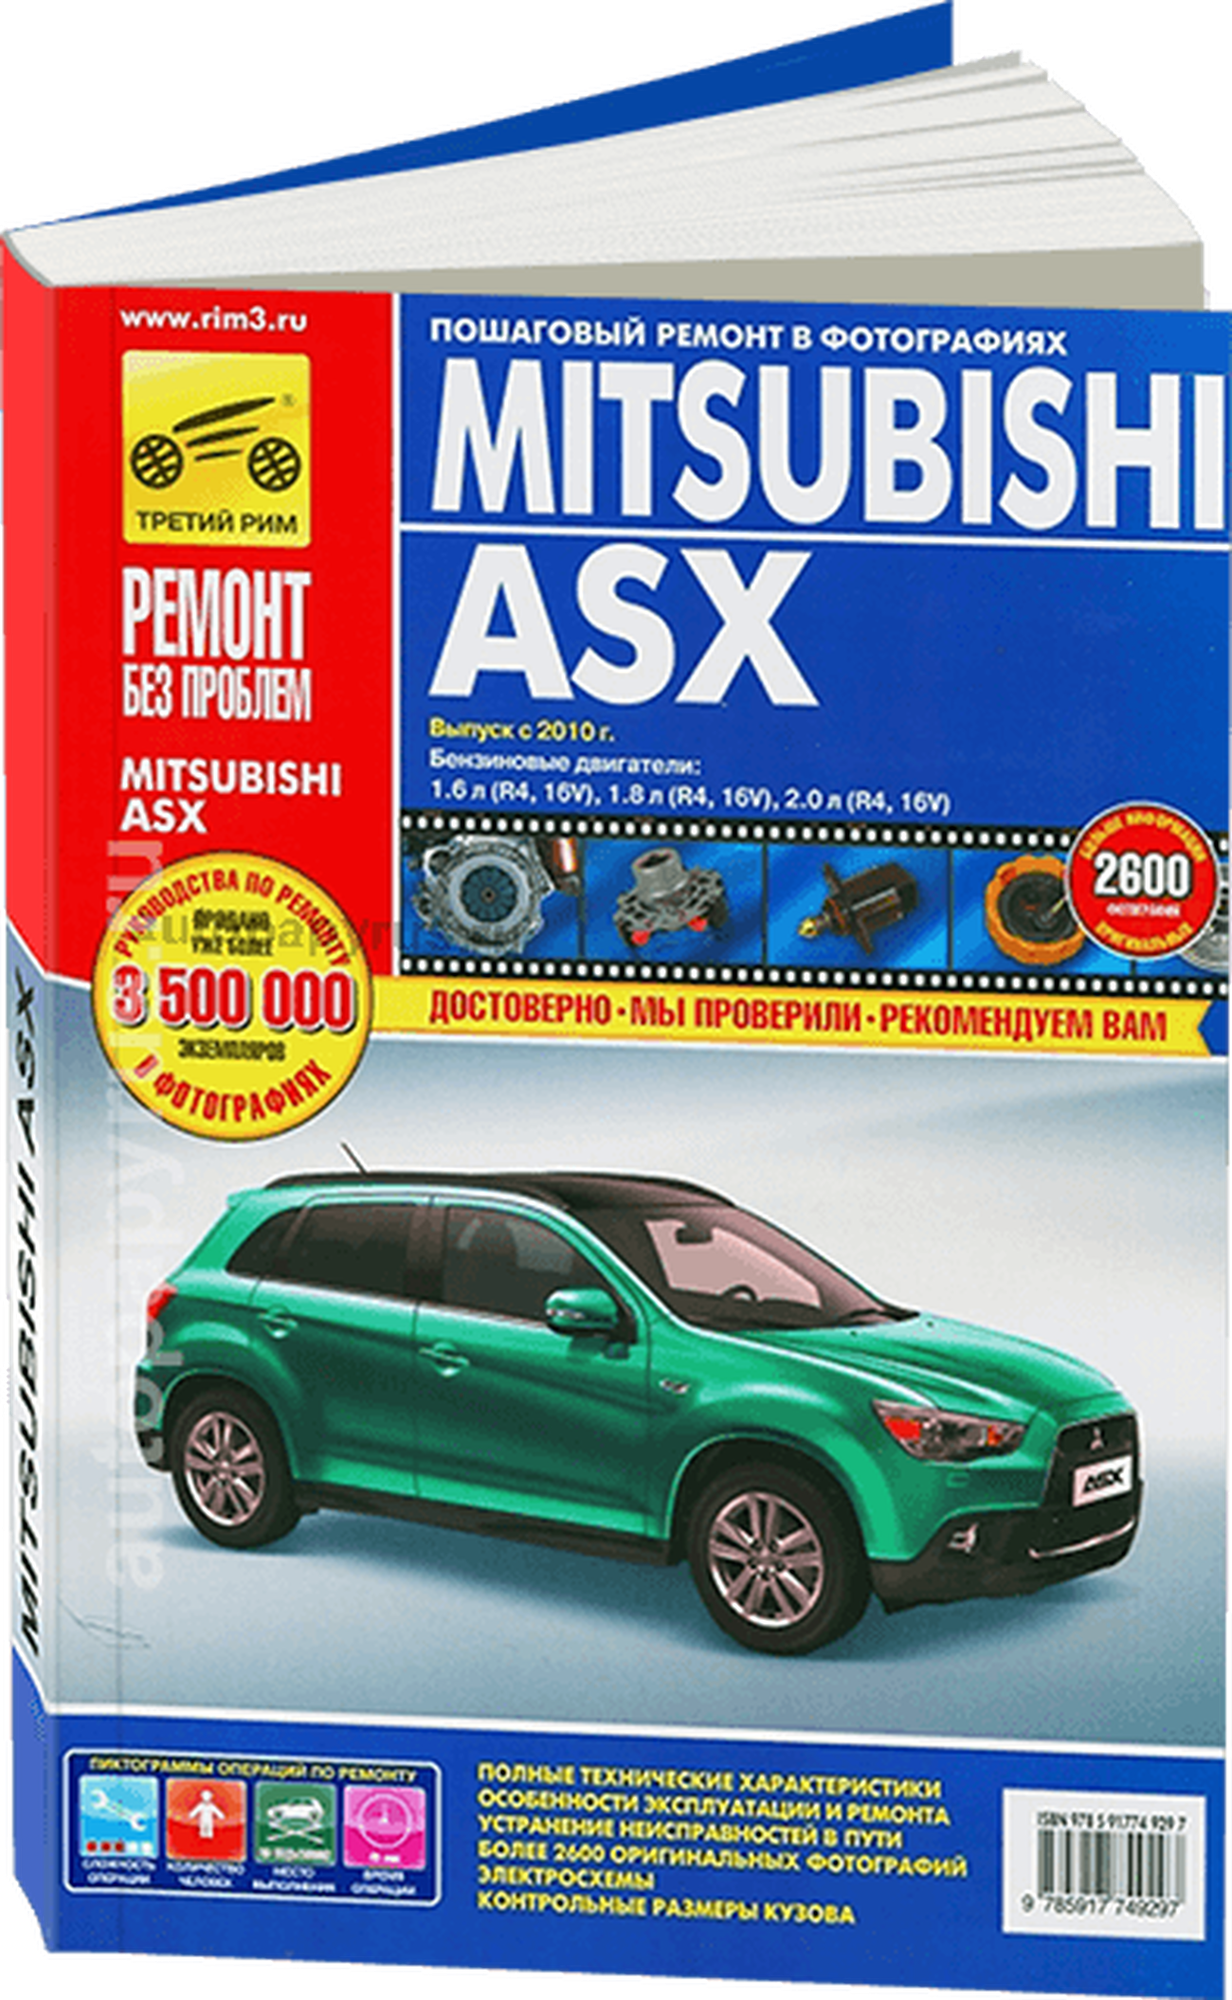 Погребной С. Титков М. Владимиров А. "Ремонт без проблем. Mitsubishi ASX с 2010 года выпуска бензиновый двигатель 1.6; 1.8; 2.0; руководство по ремонту"